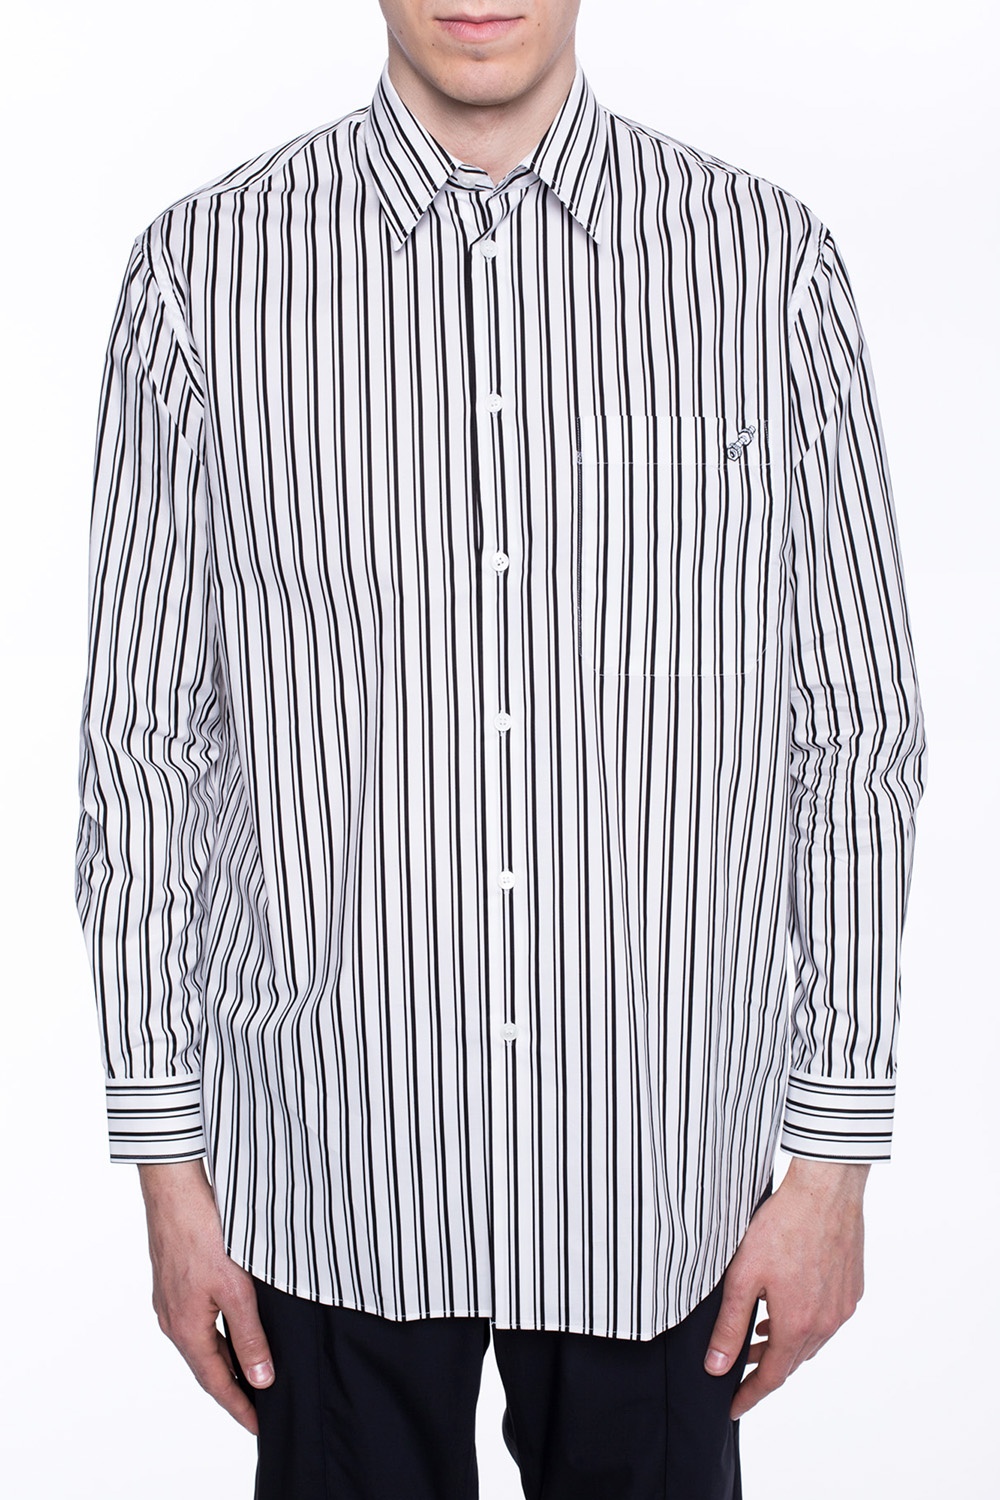 versace striped shirt